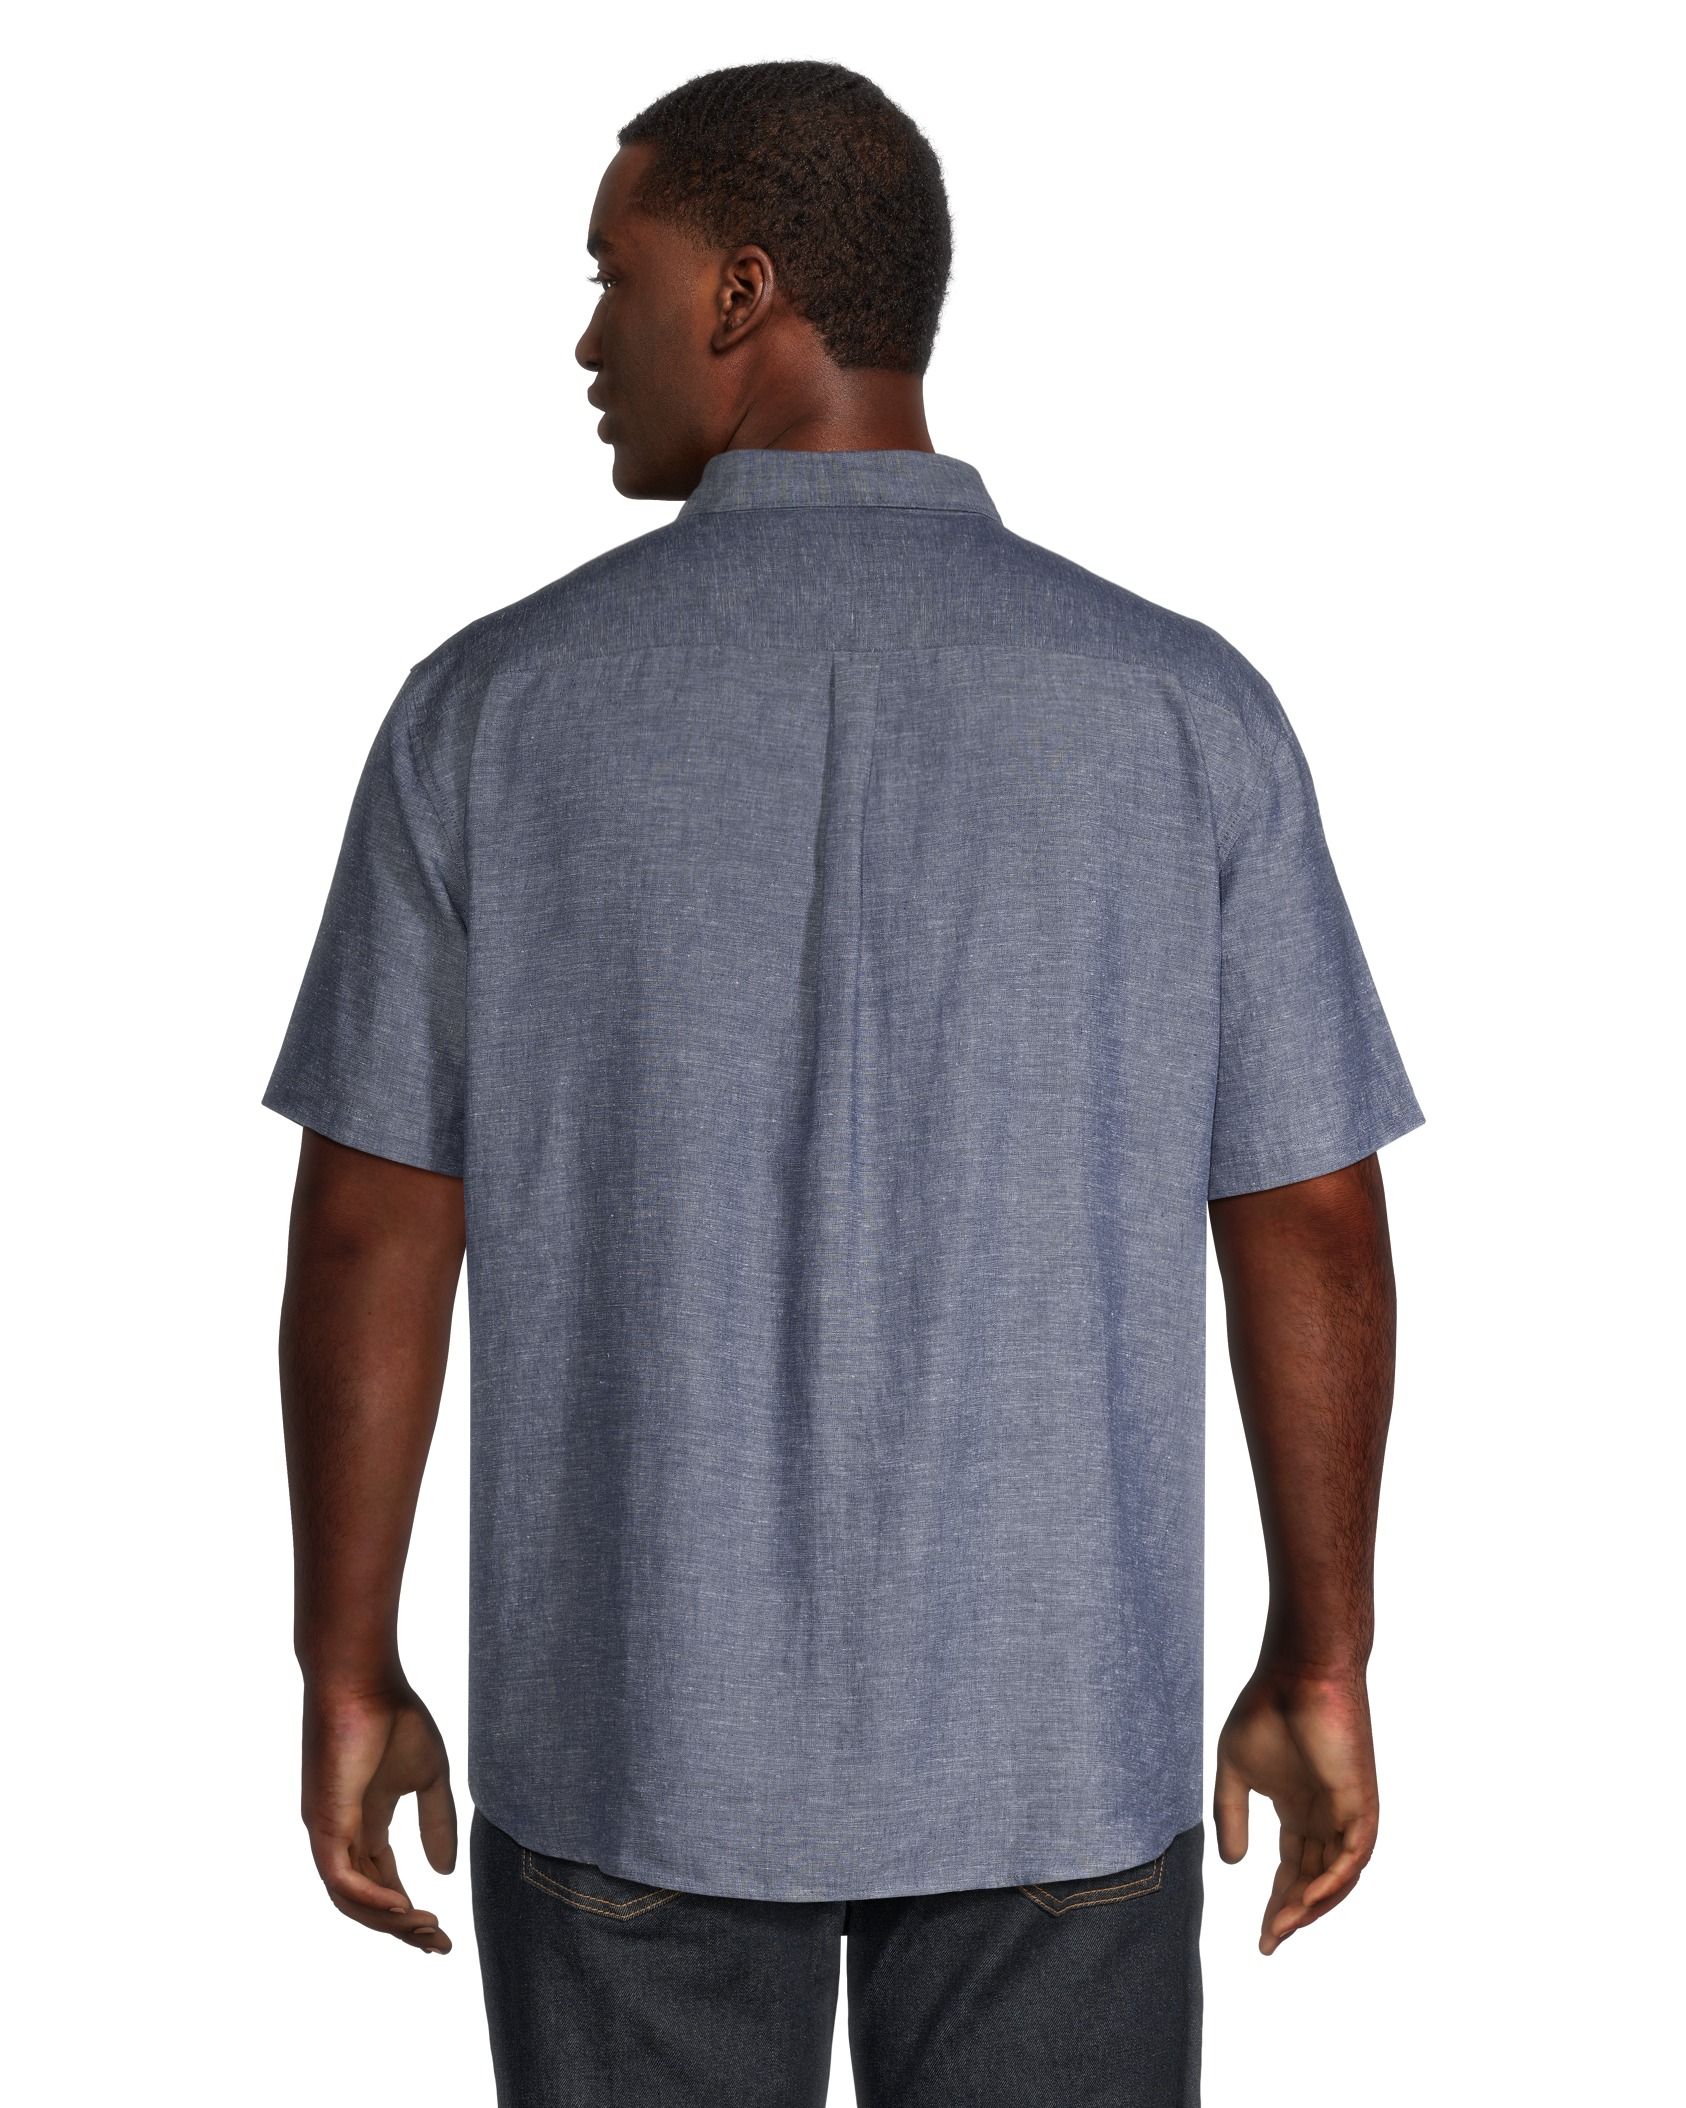 Denver Hayes Men's 50 Wash Classic Fit Chest Pocket Crewneck Cotton T Shirt